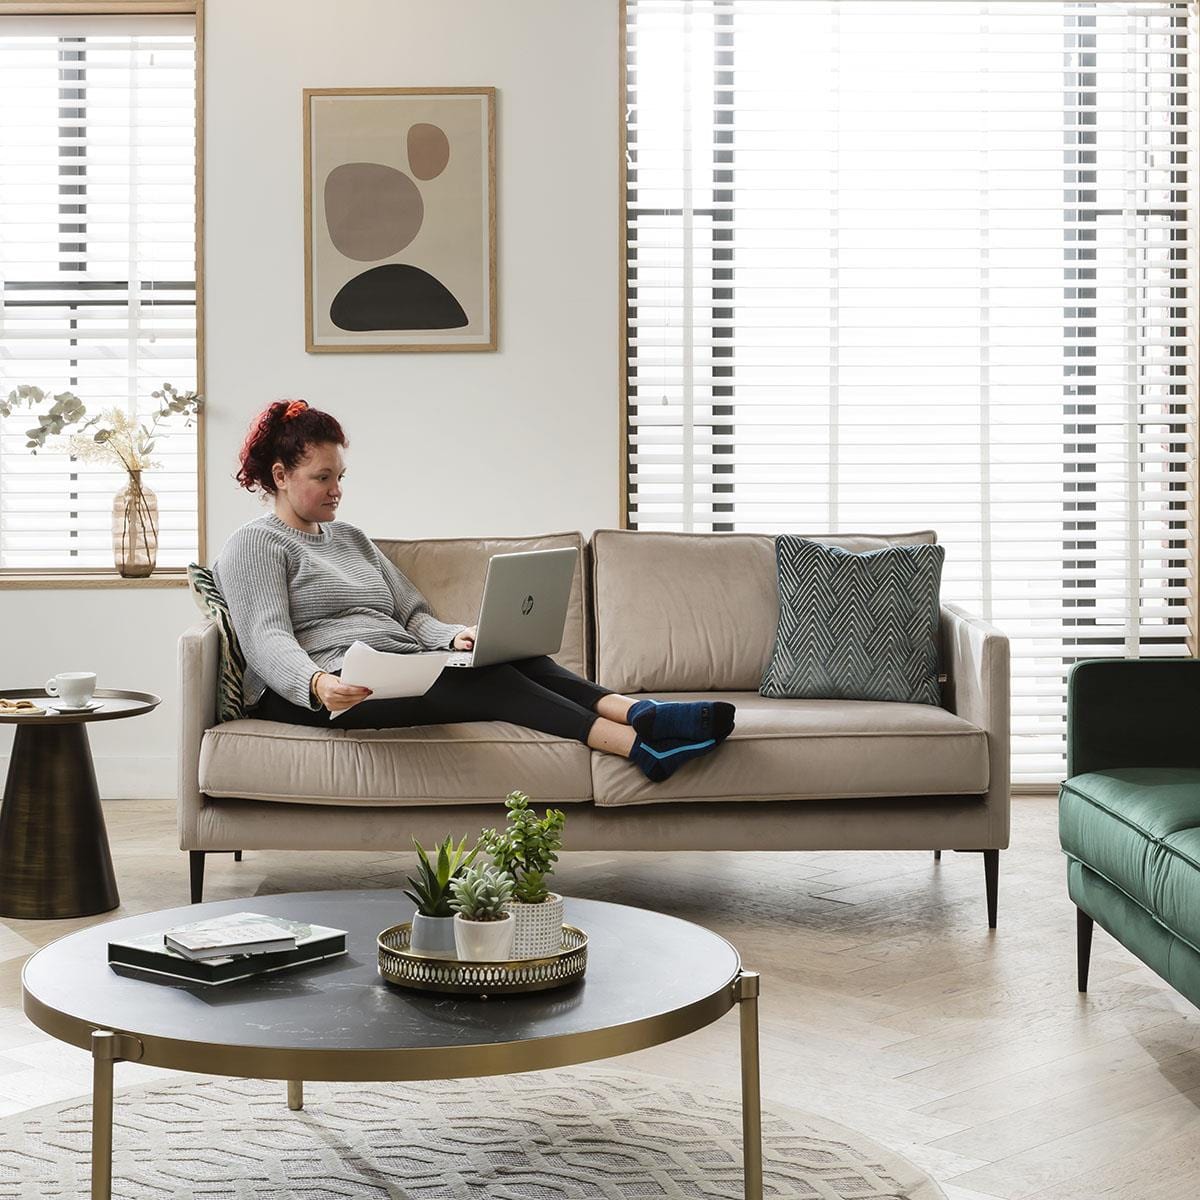 Quatropi Quatropi 3 Seater Sofa - Upholstered Modern Design - Choose Your Fabric - 180cm